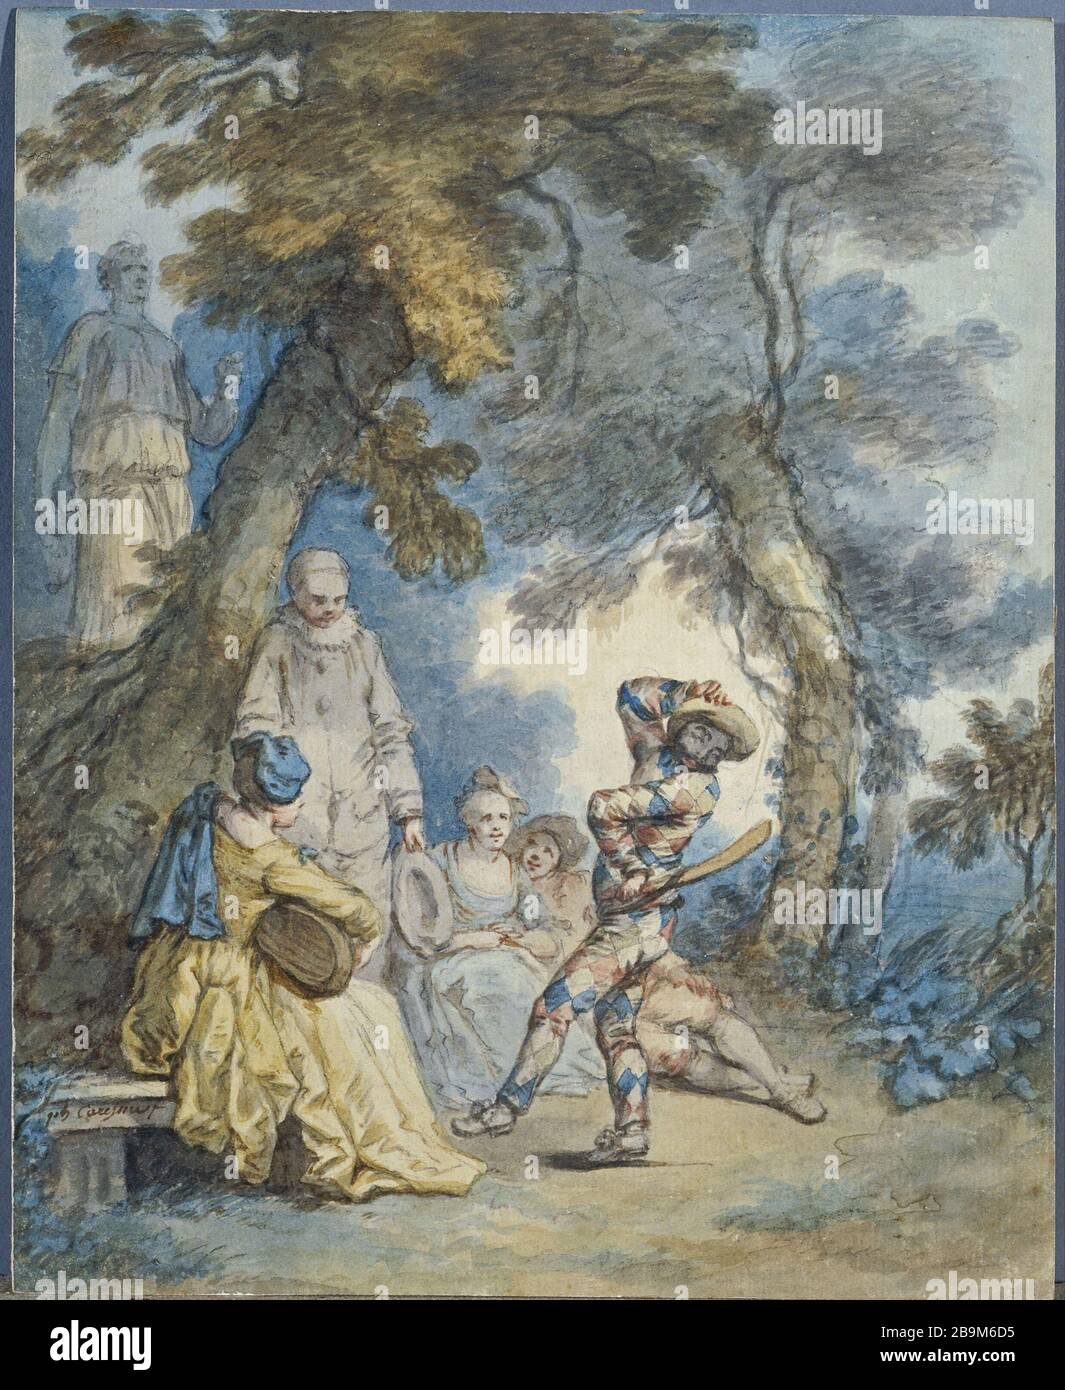 ARLEQUIN Philippe Caresme (1734-1796). "Arlequin". Aquarelle avec rehauuts de gouache sur Papier. Paris, musée Cognacq-Jay. Stockfoto